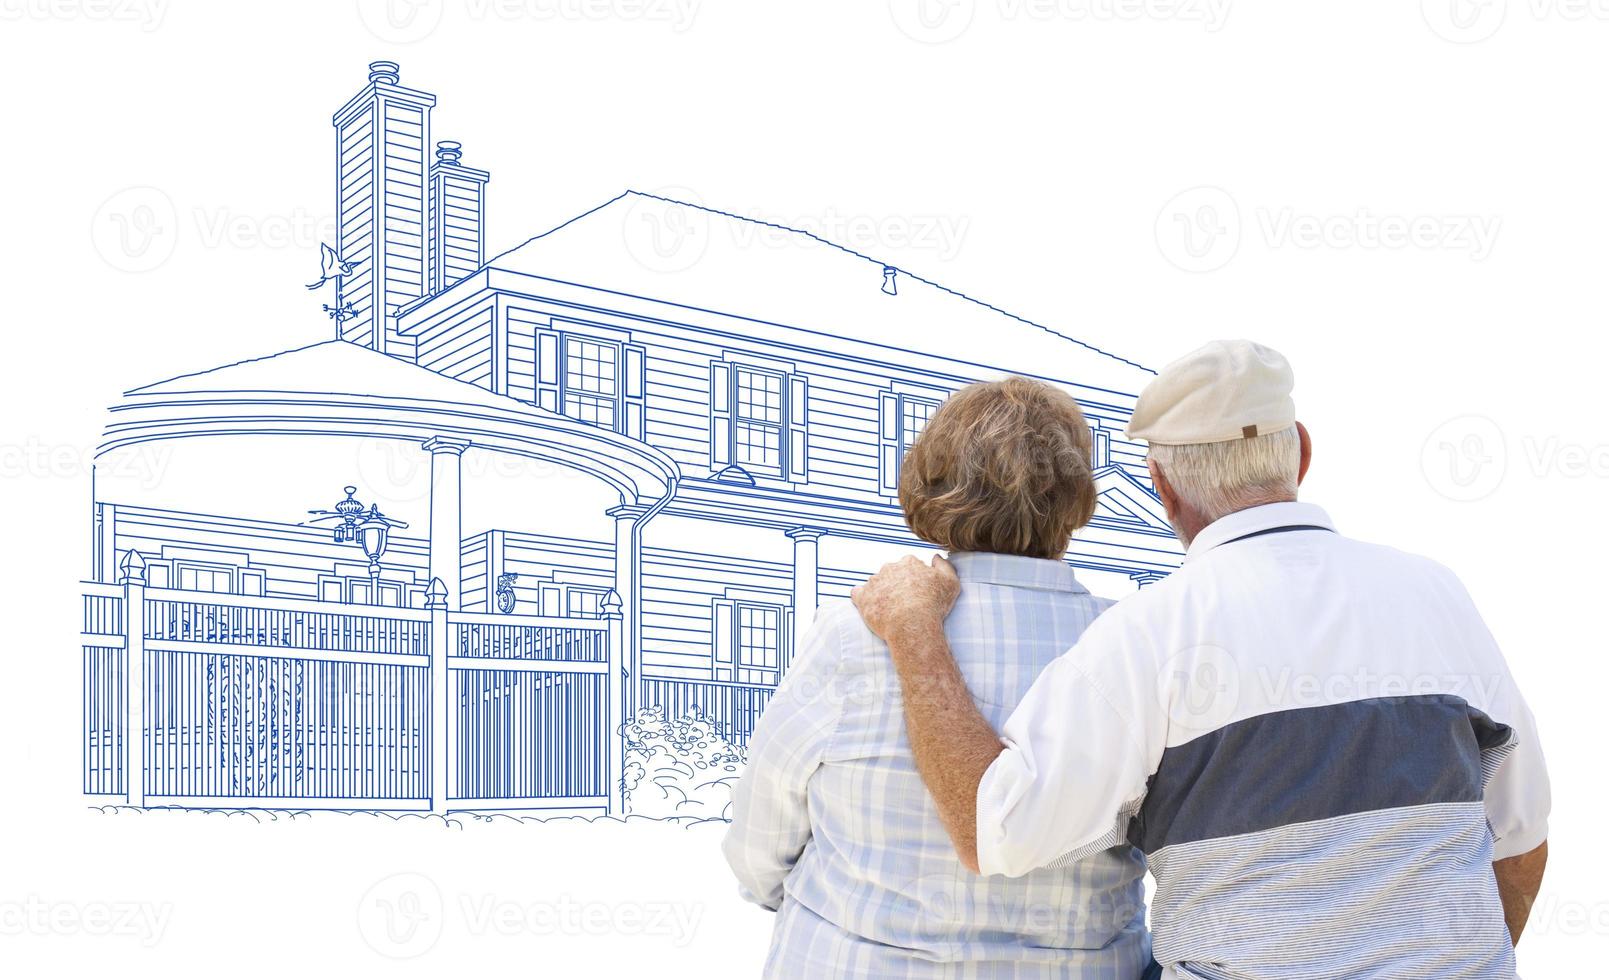 abraçando o casal sênior olhando para casa desenhando em branco foto